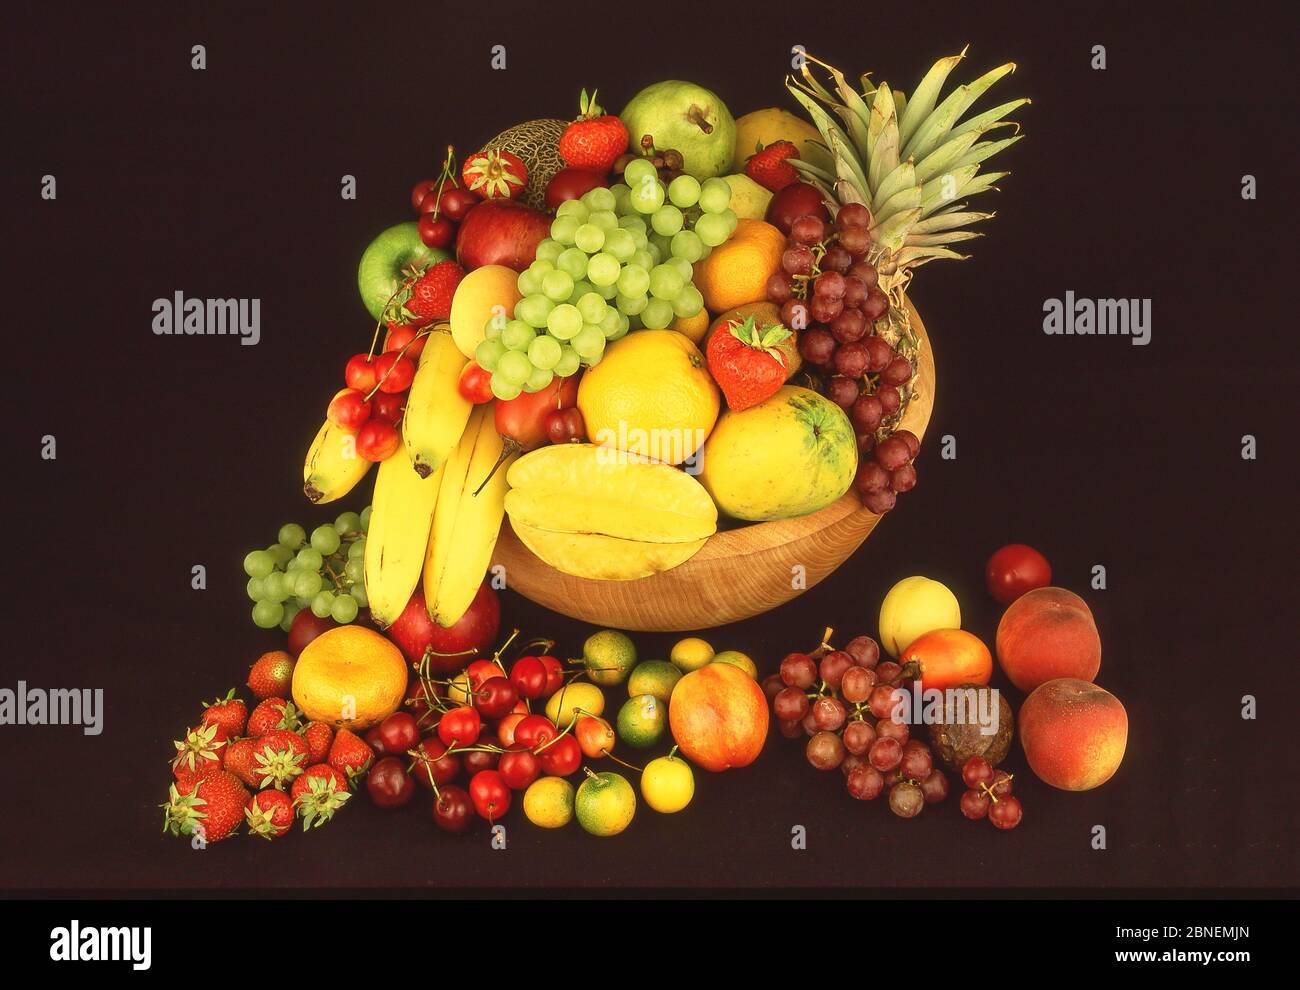 Sélection de fruits et de fruits tropicaux, Greater London, Angleterre, Royaume-Uni Banque D'Images